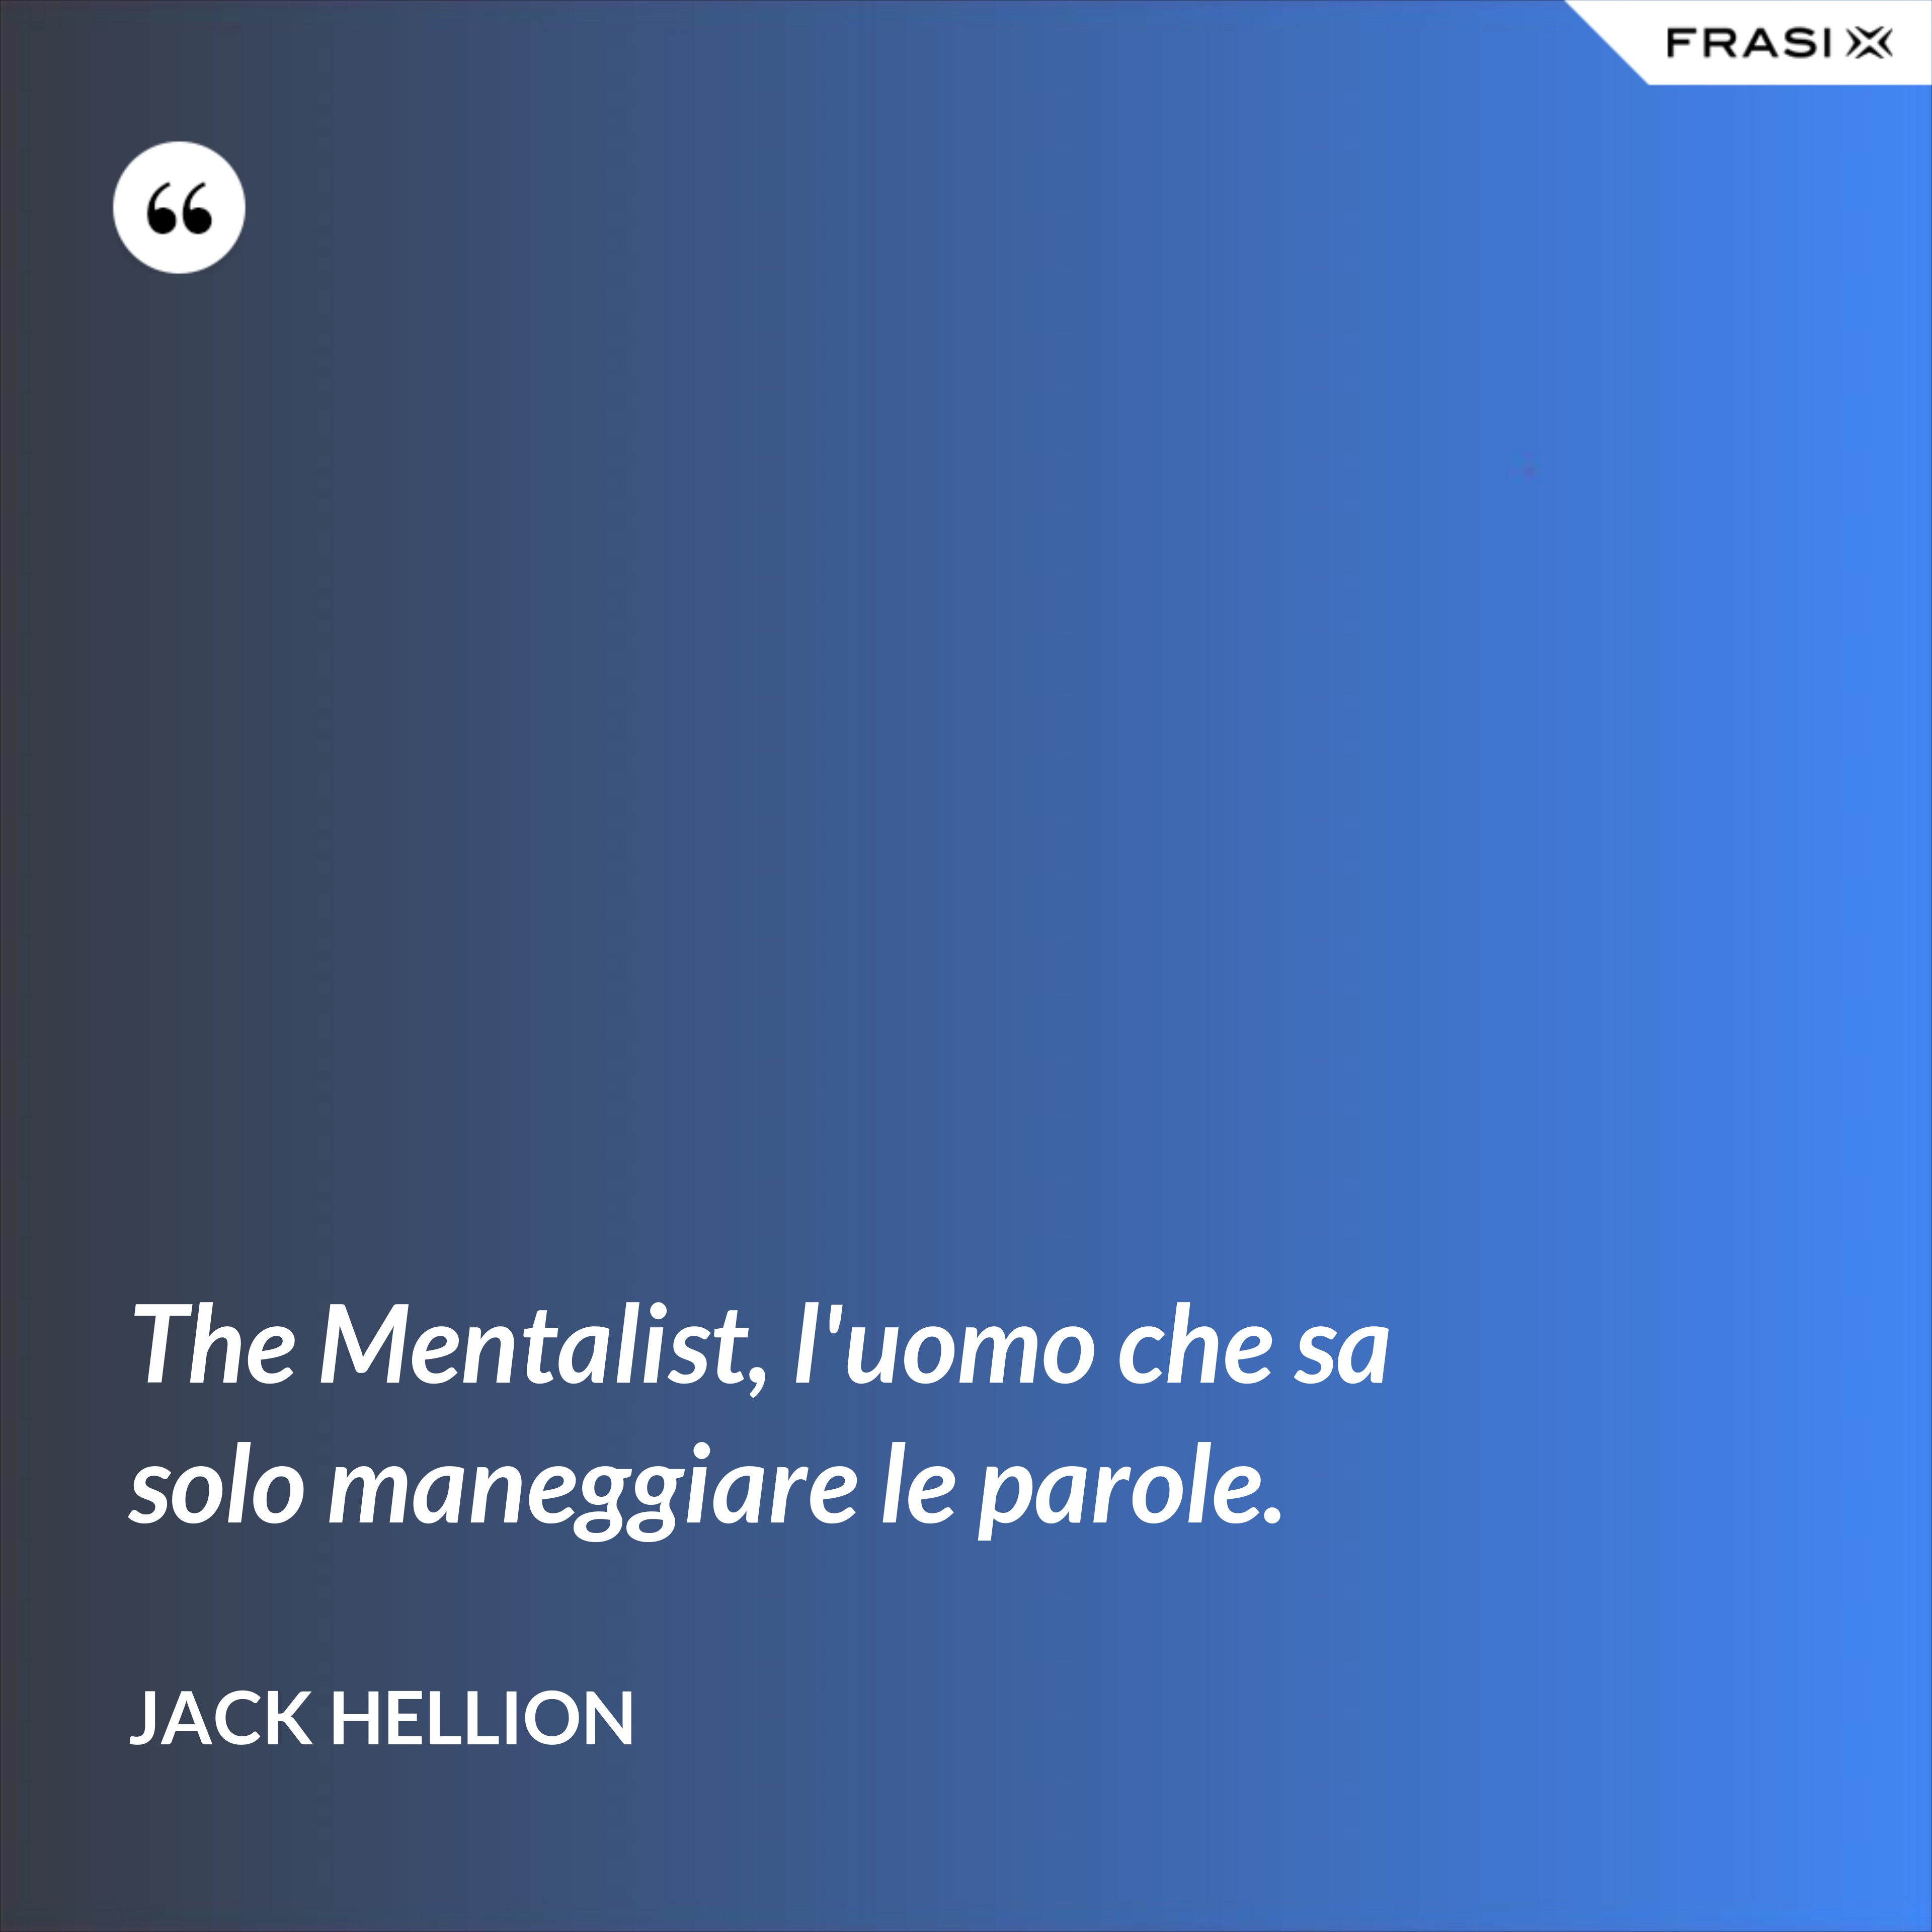 The Mentalist, l'uomo che sa solo maneggiare le parole. - Jack Hellion